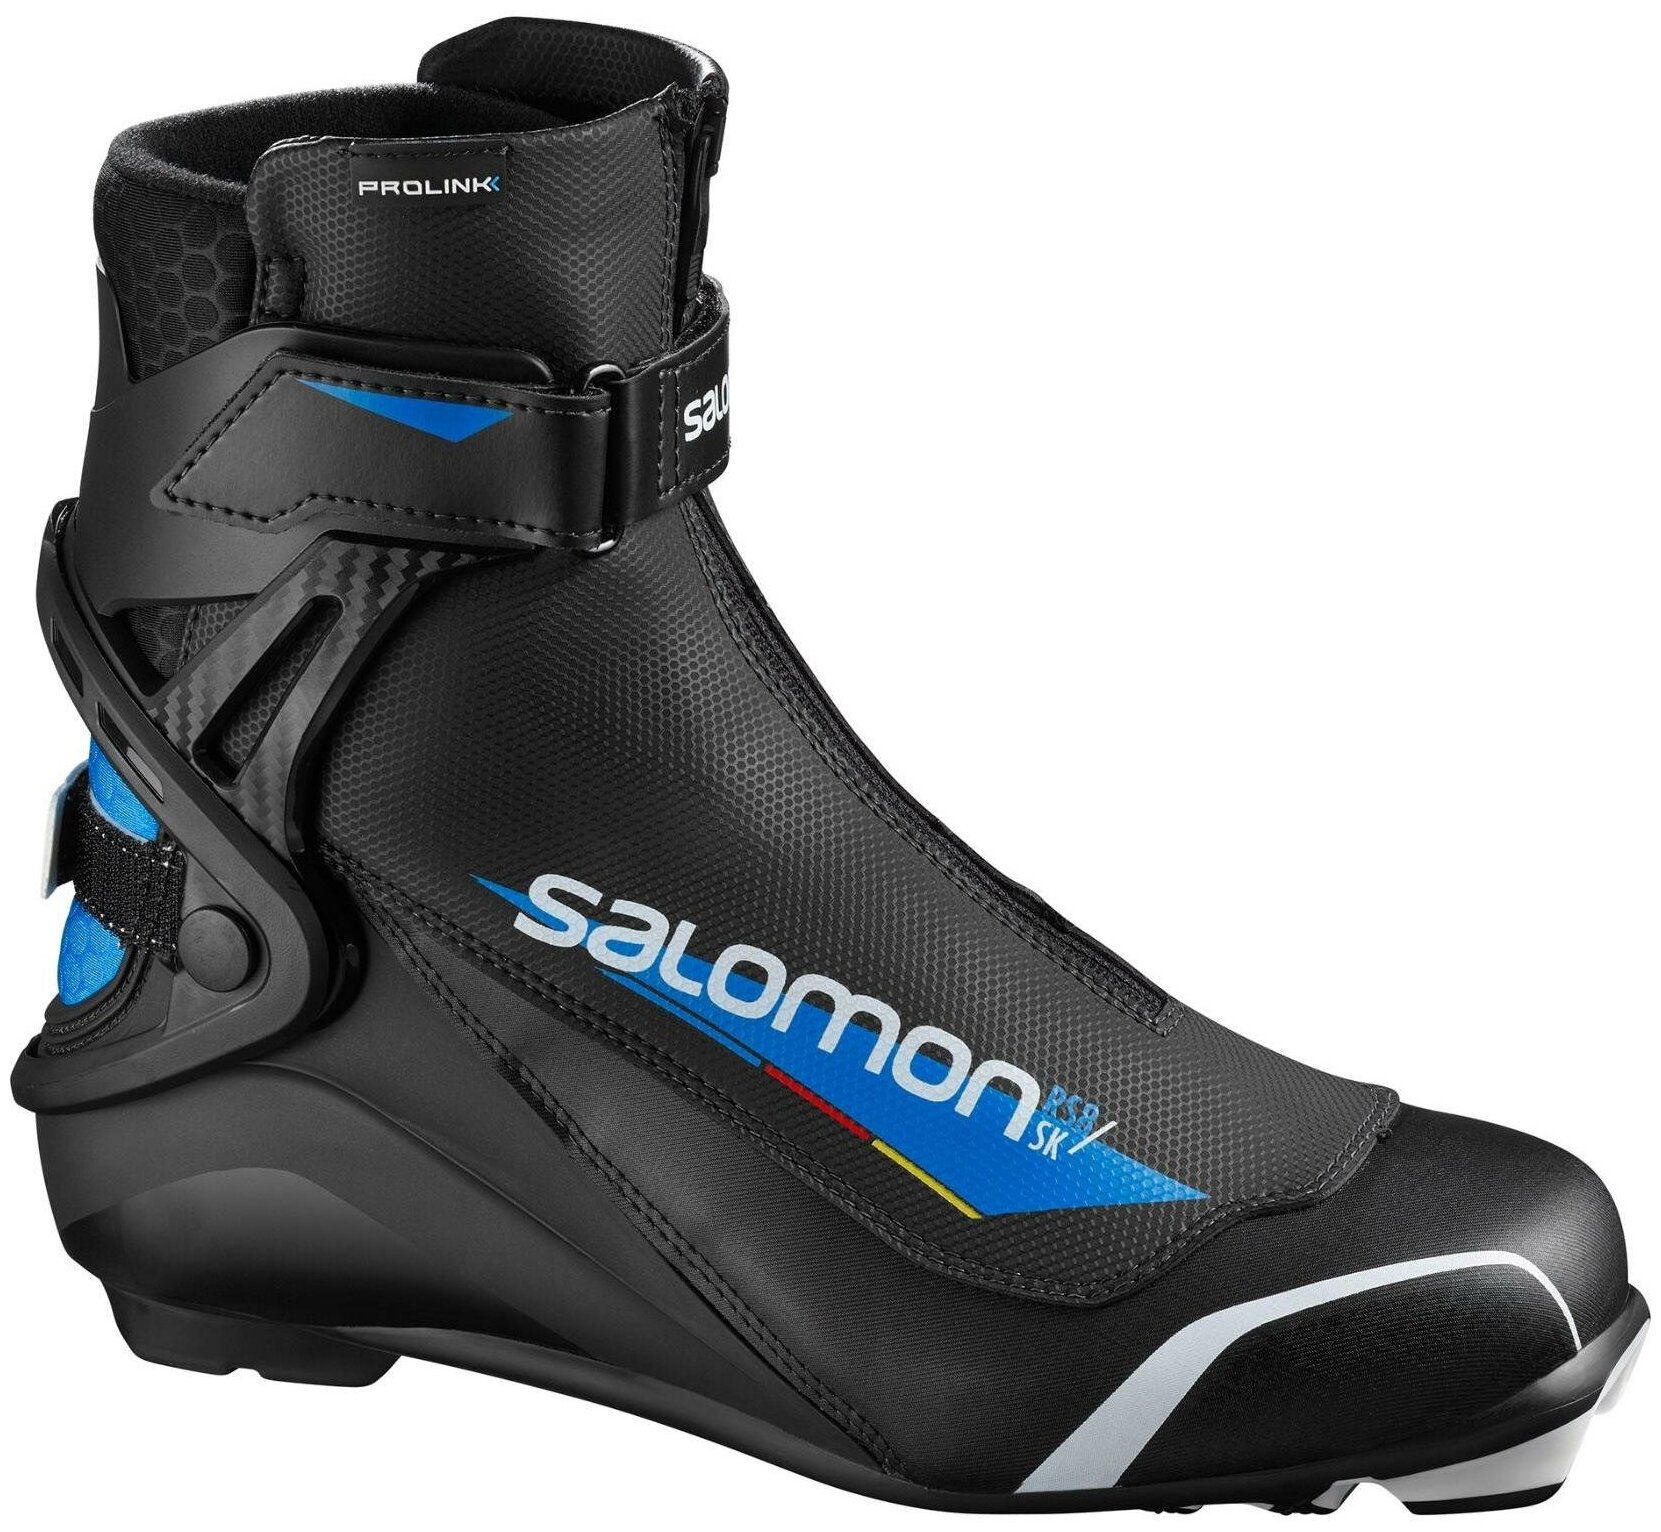 Лыжные ботинки Salomon RS8 Prolink 408416 NNN (черный/синий/белый) 2019-2020 39 EU